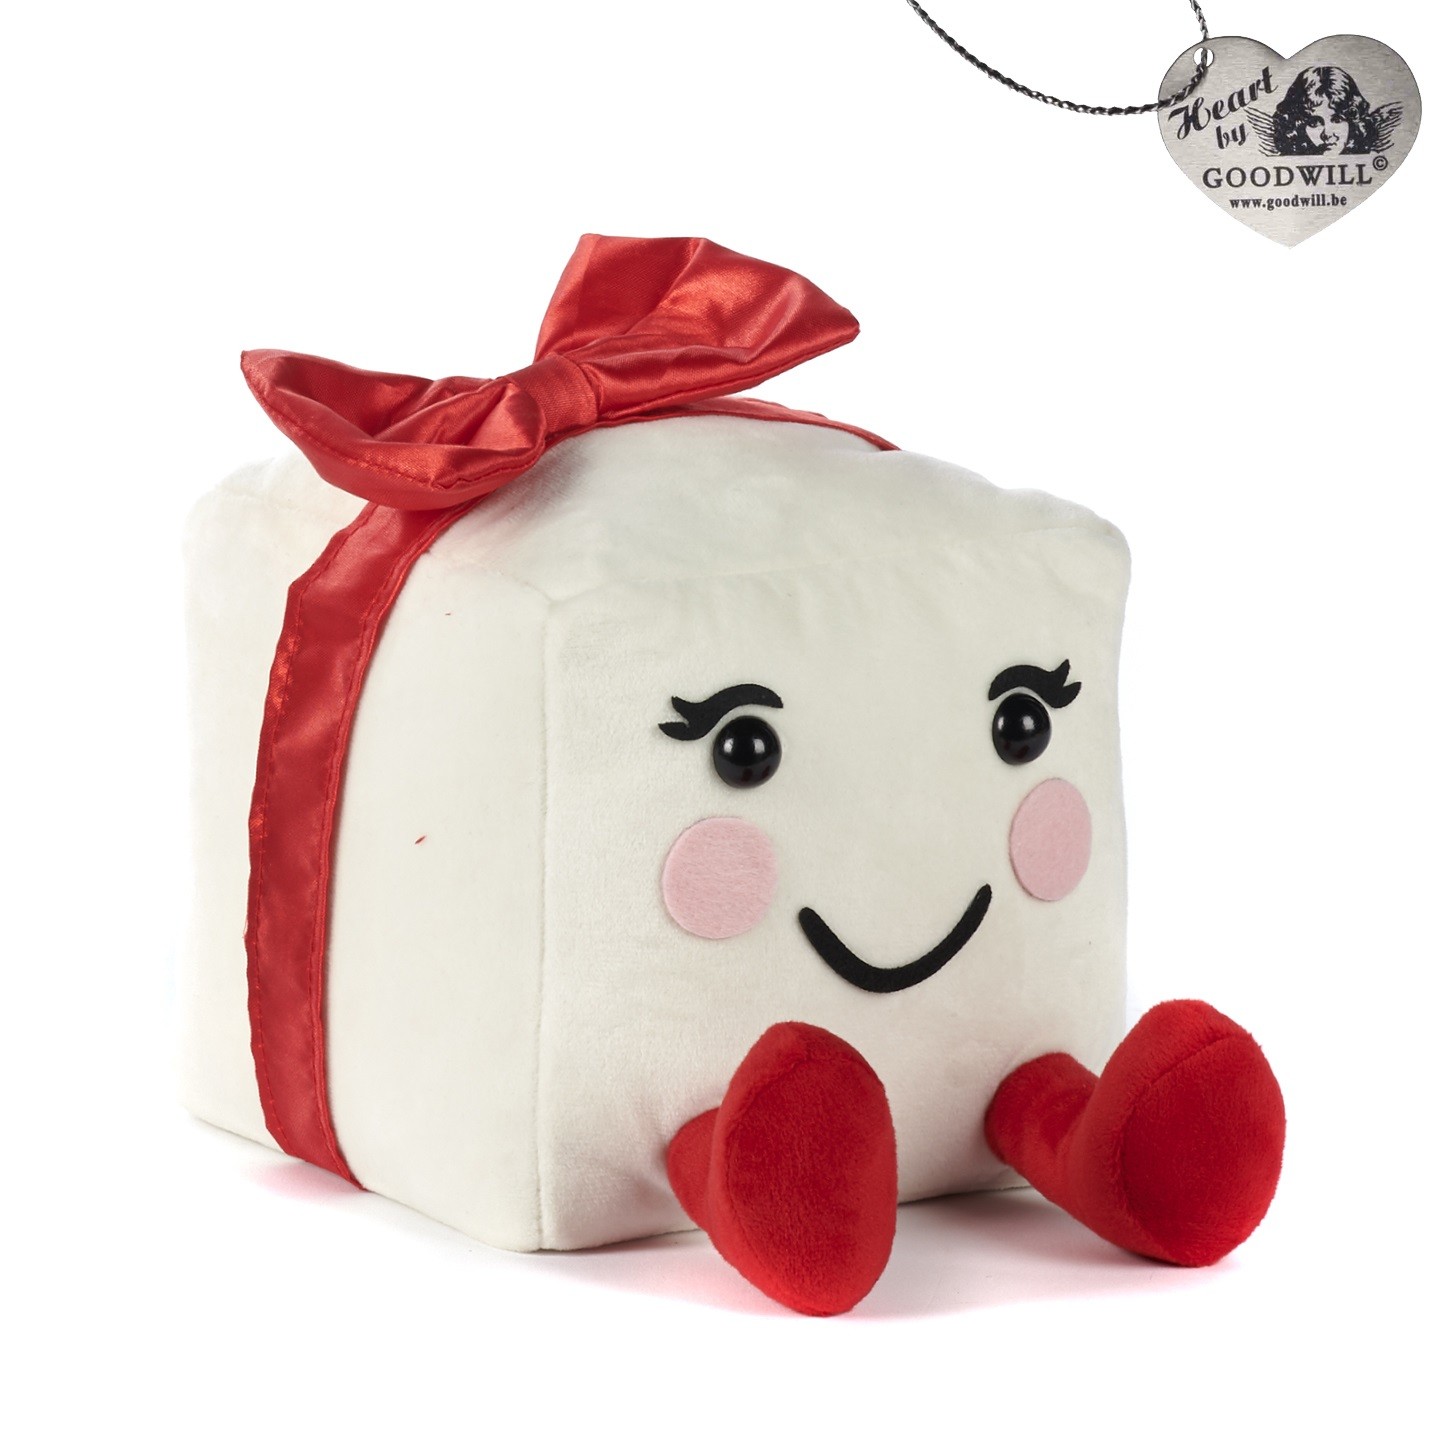 Pacco regalo in peluche bianco e rosso - H. 24 cm - Goodwill